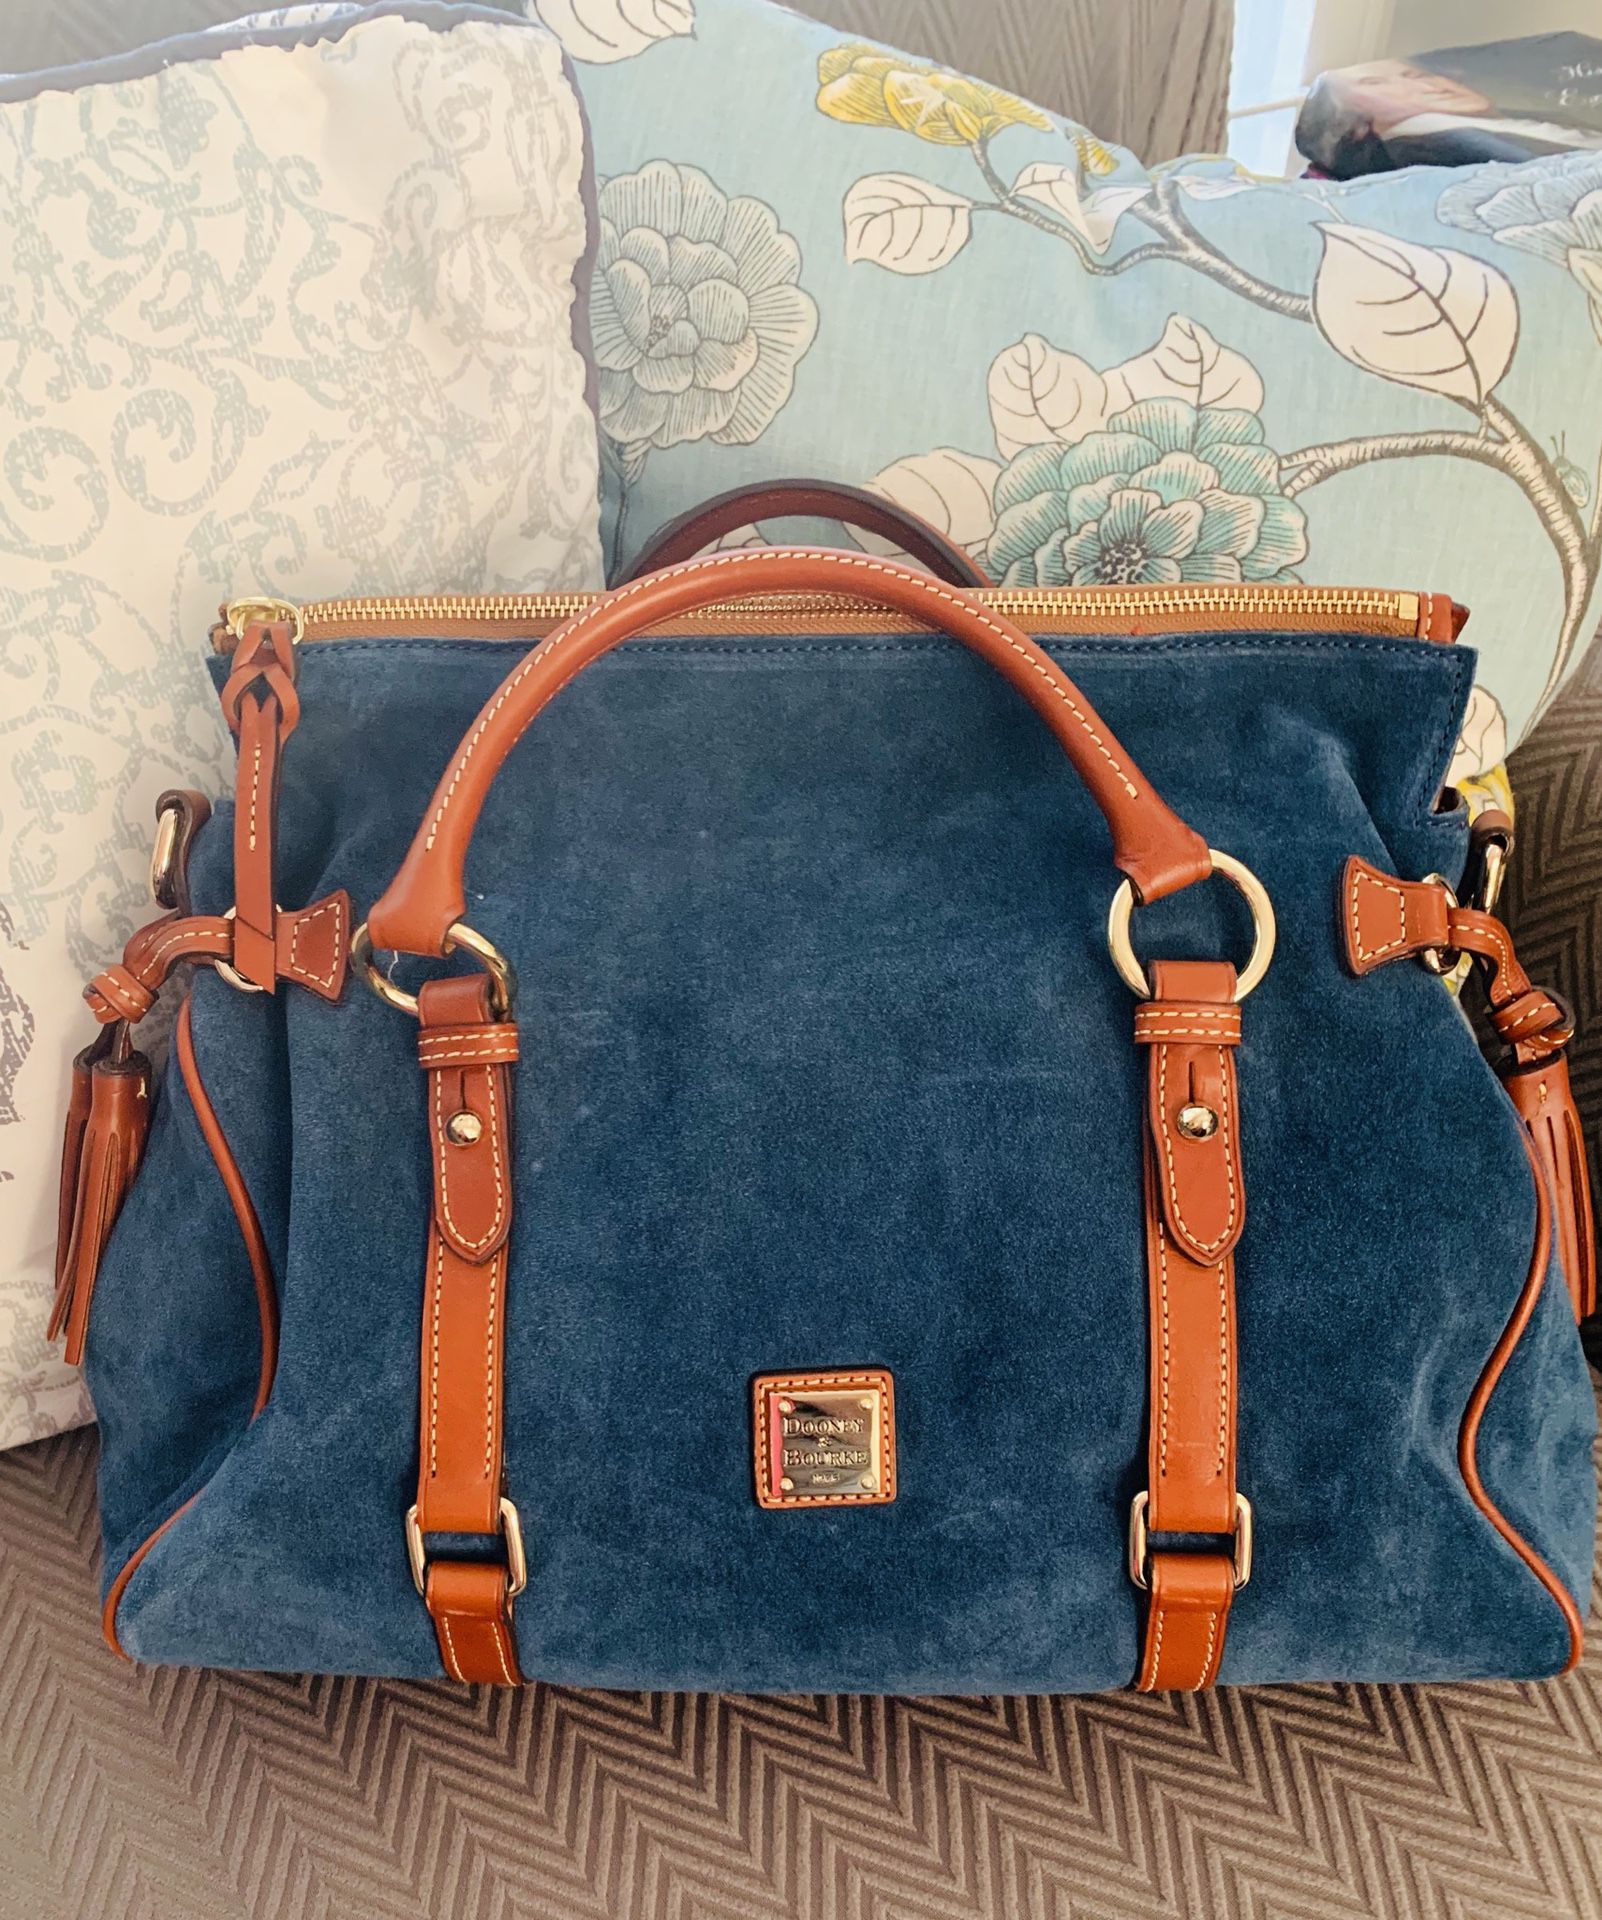 New Dooney & Bourke purse blue suede